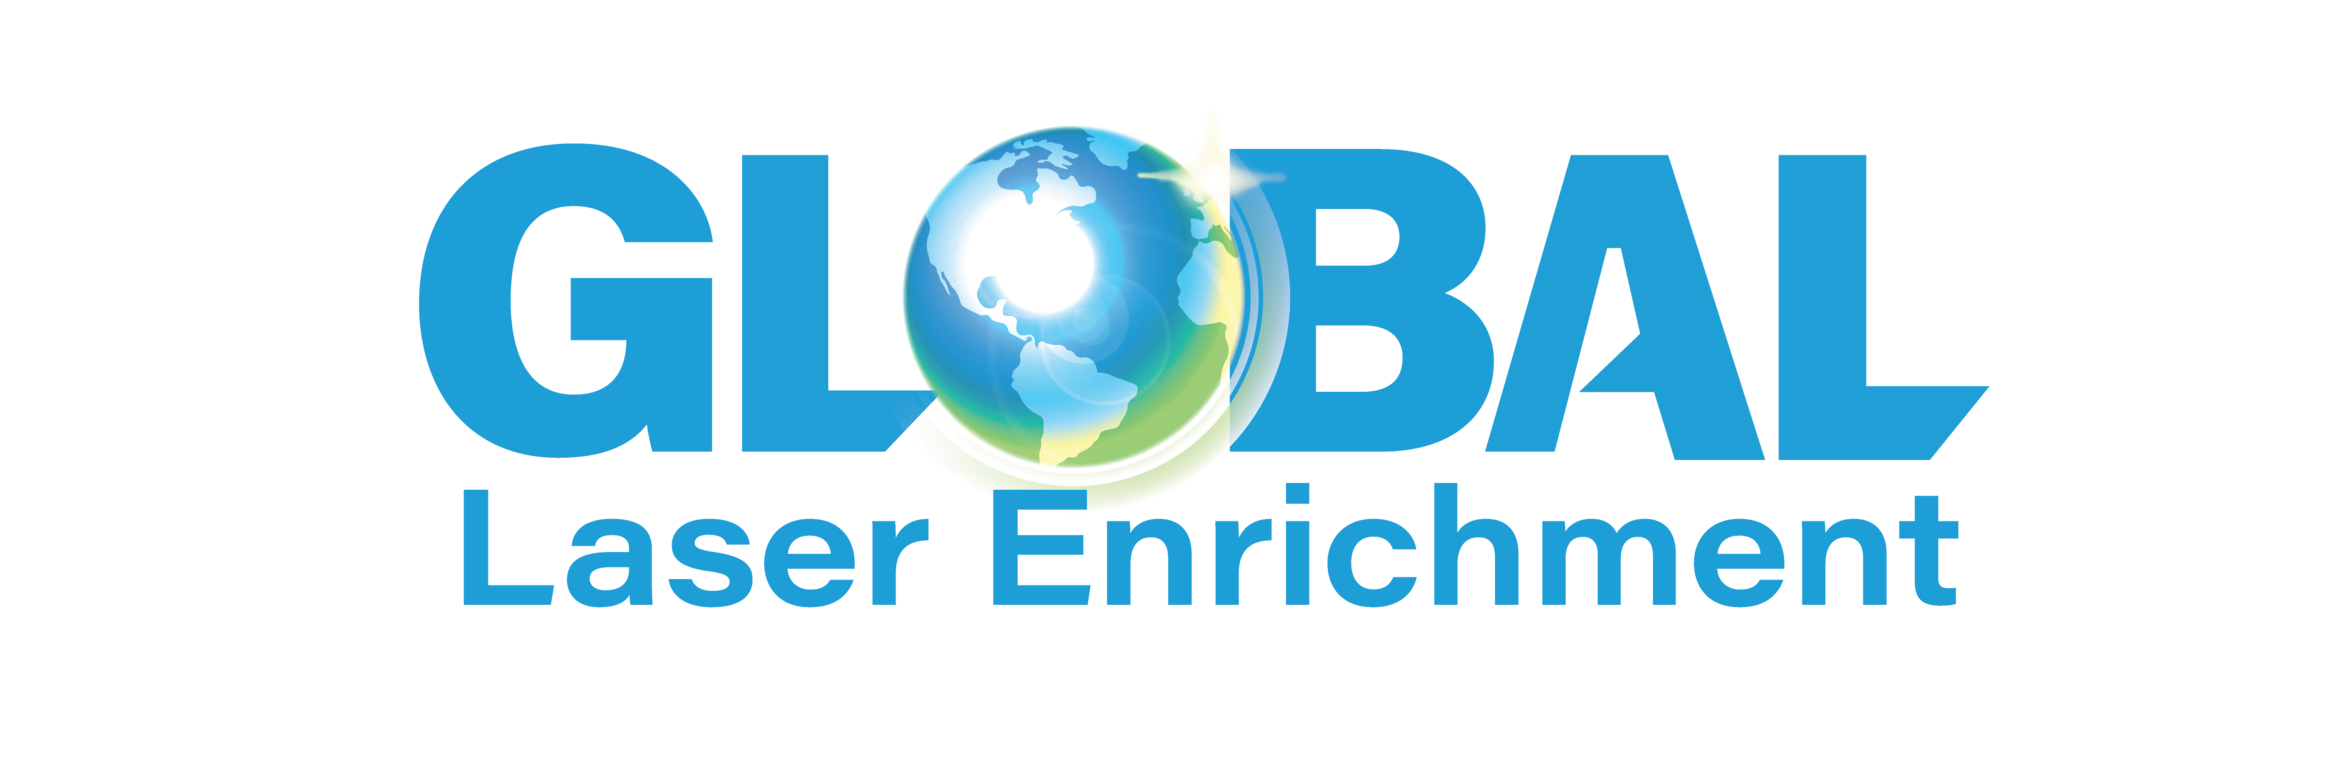 Global Laser Enrichment